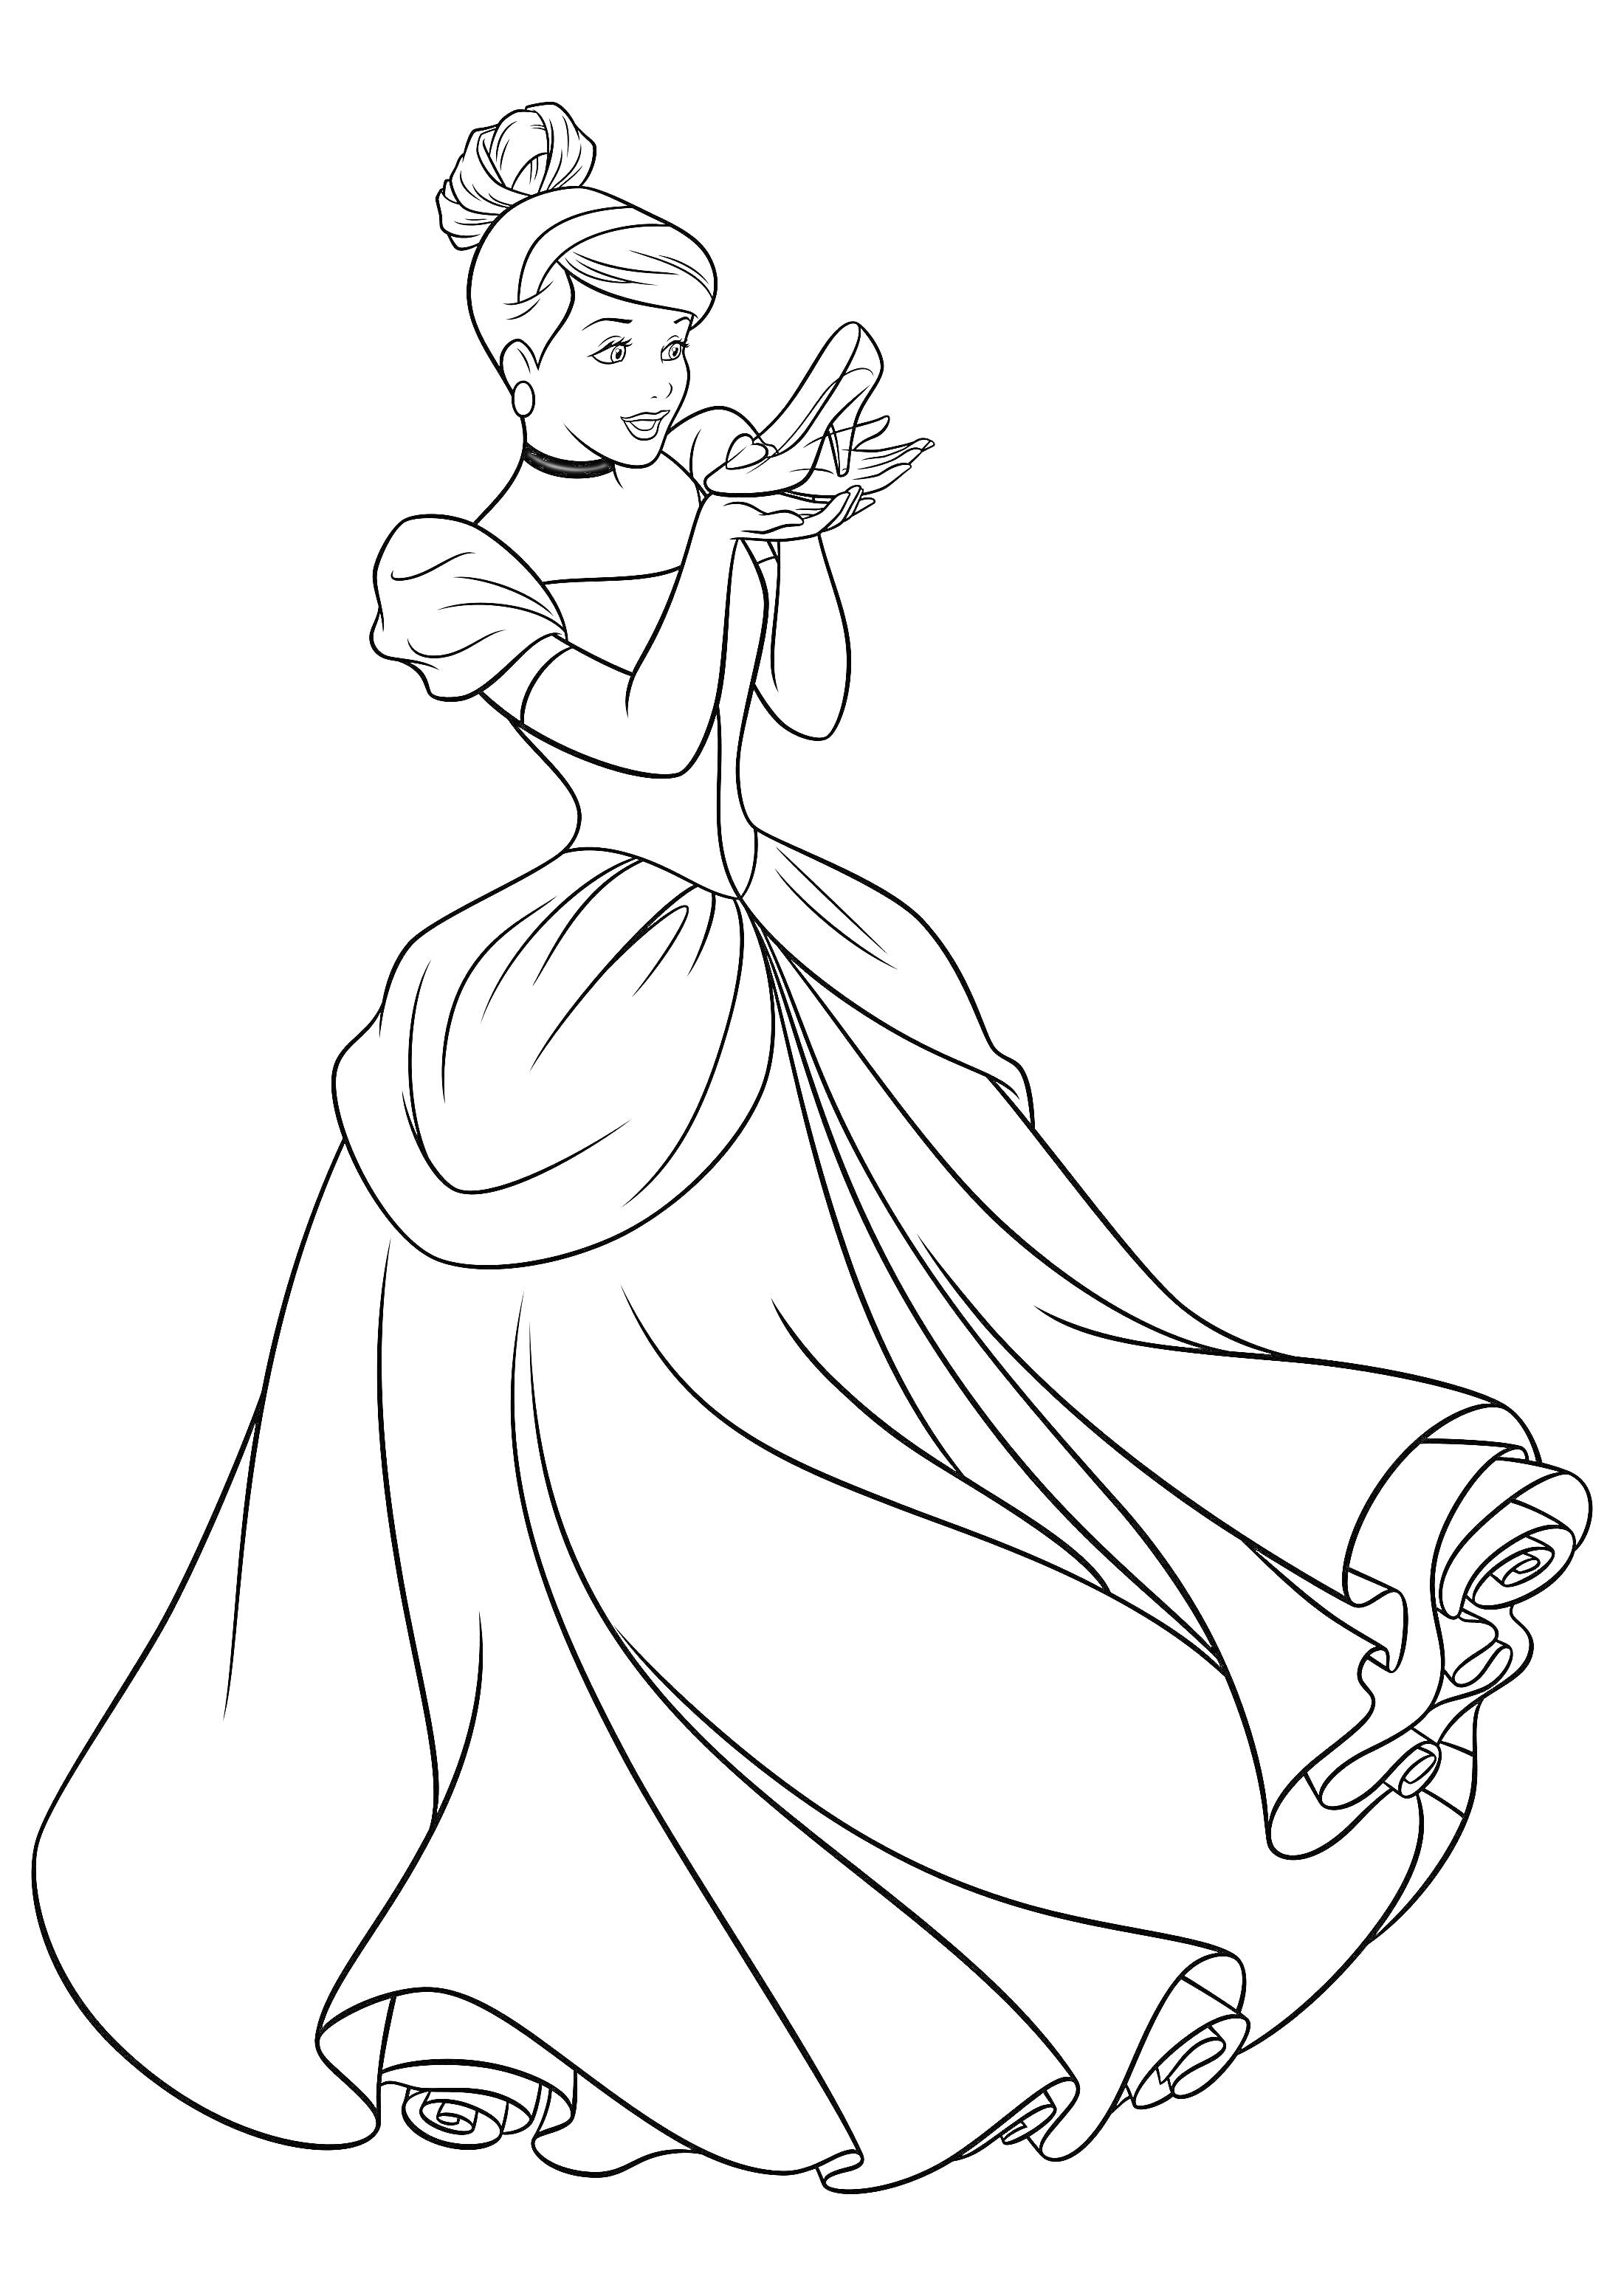 Принцесса держит туфельку, длинное платье, волосы собраны в пучок